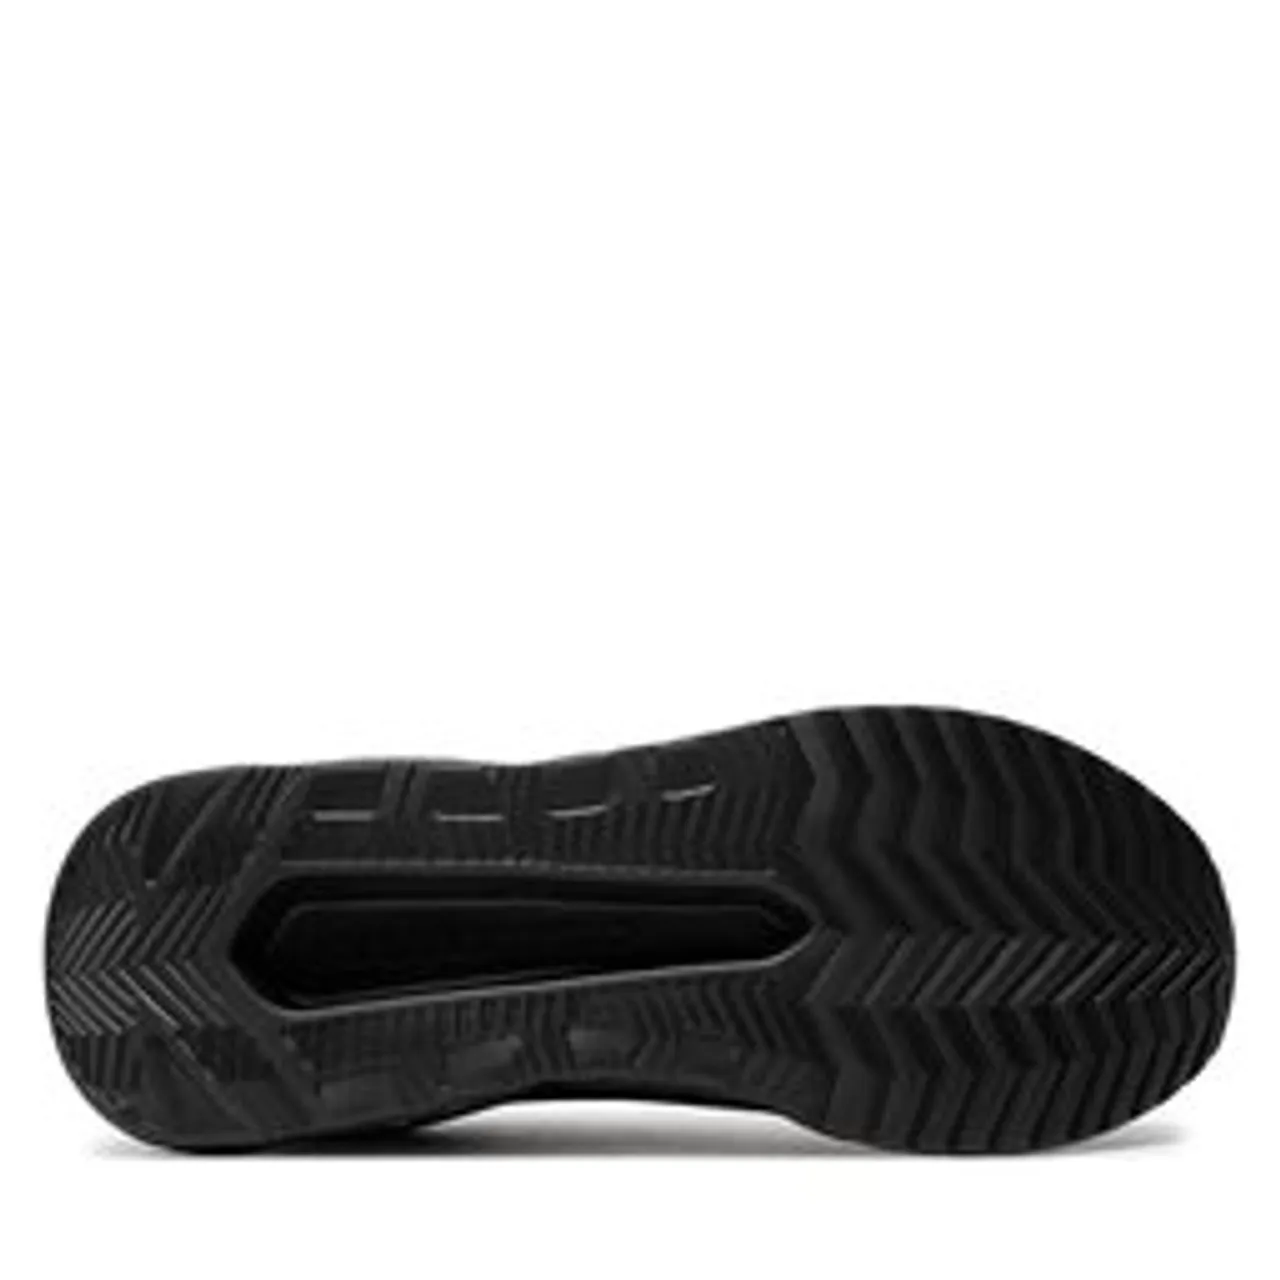 Sneakers KARL LAGERFELD KL54614 Black Knit Textile/Mono K0X